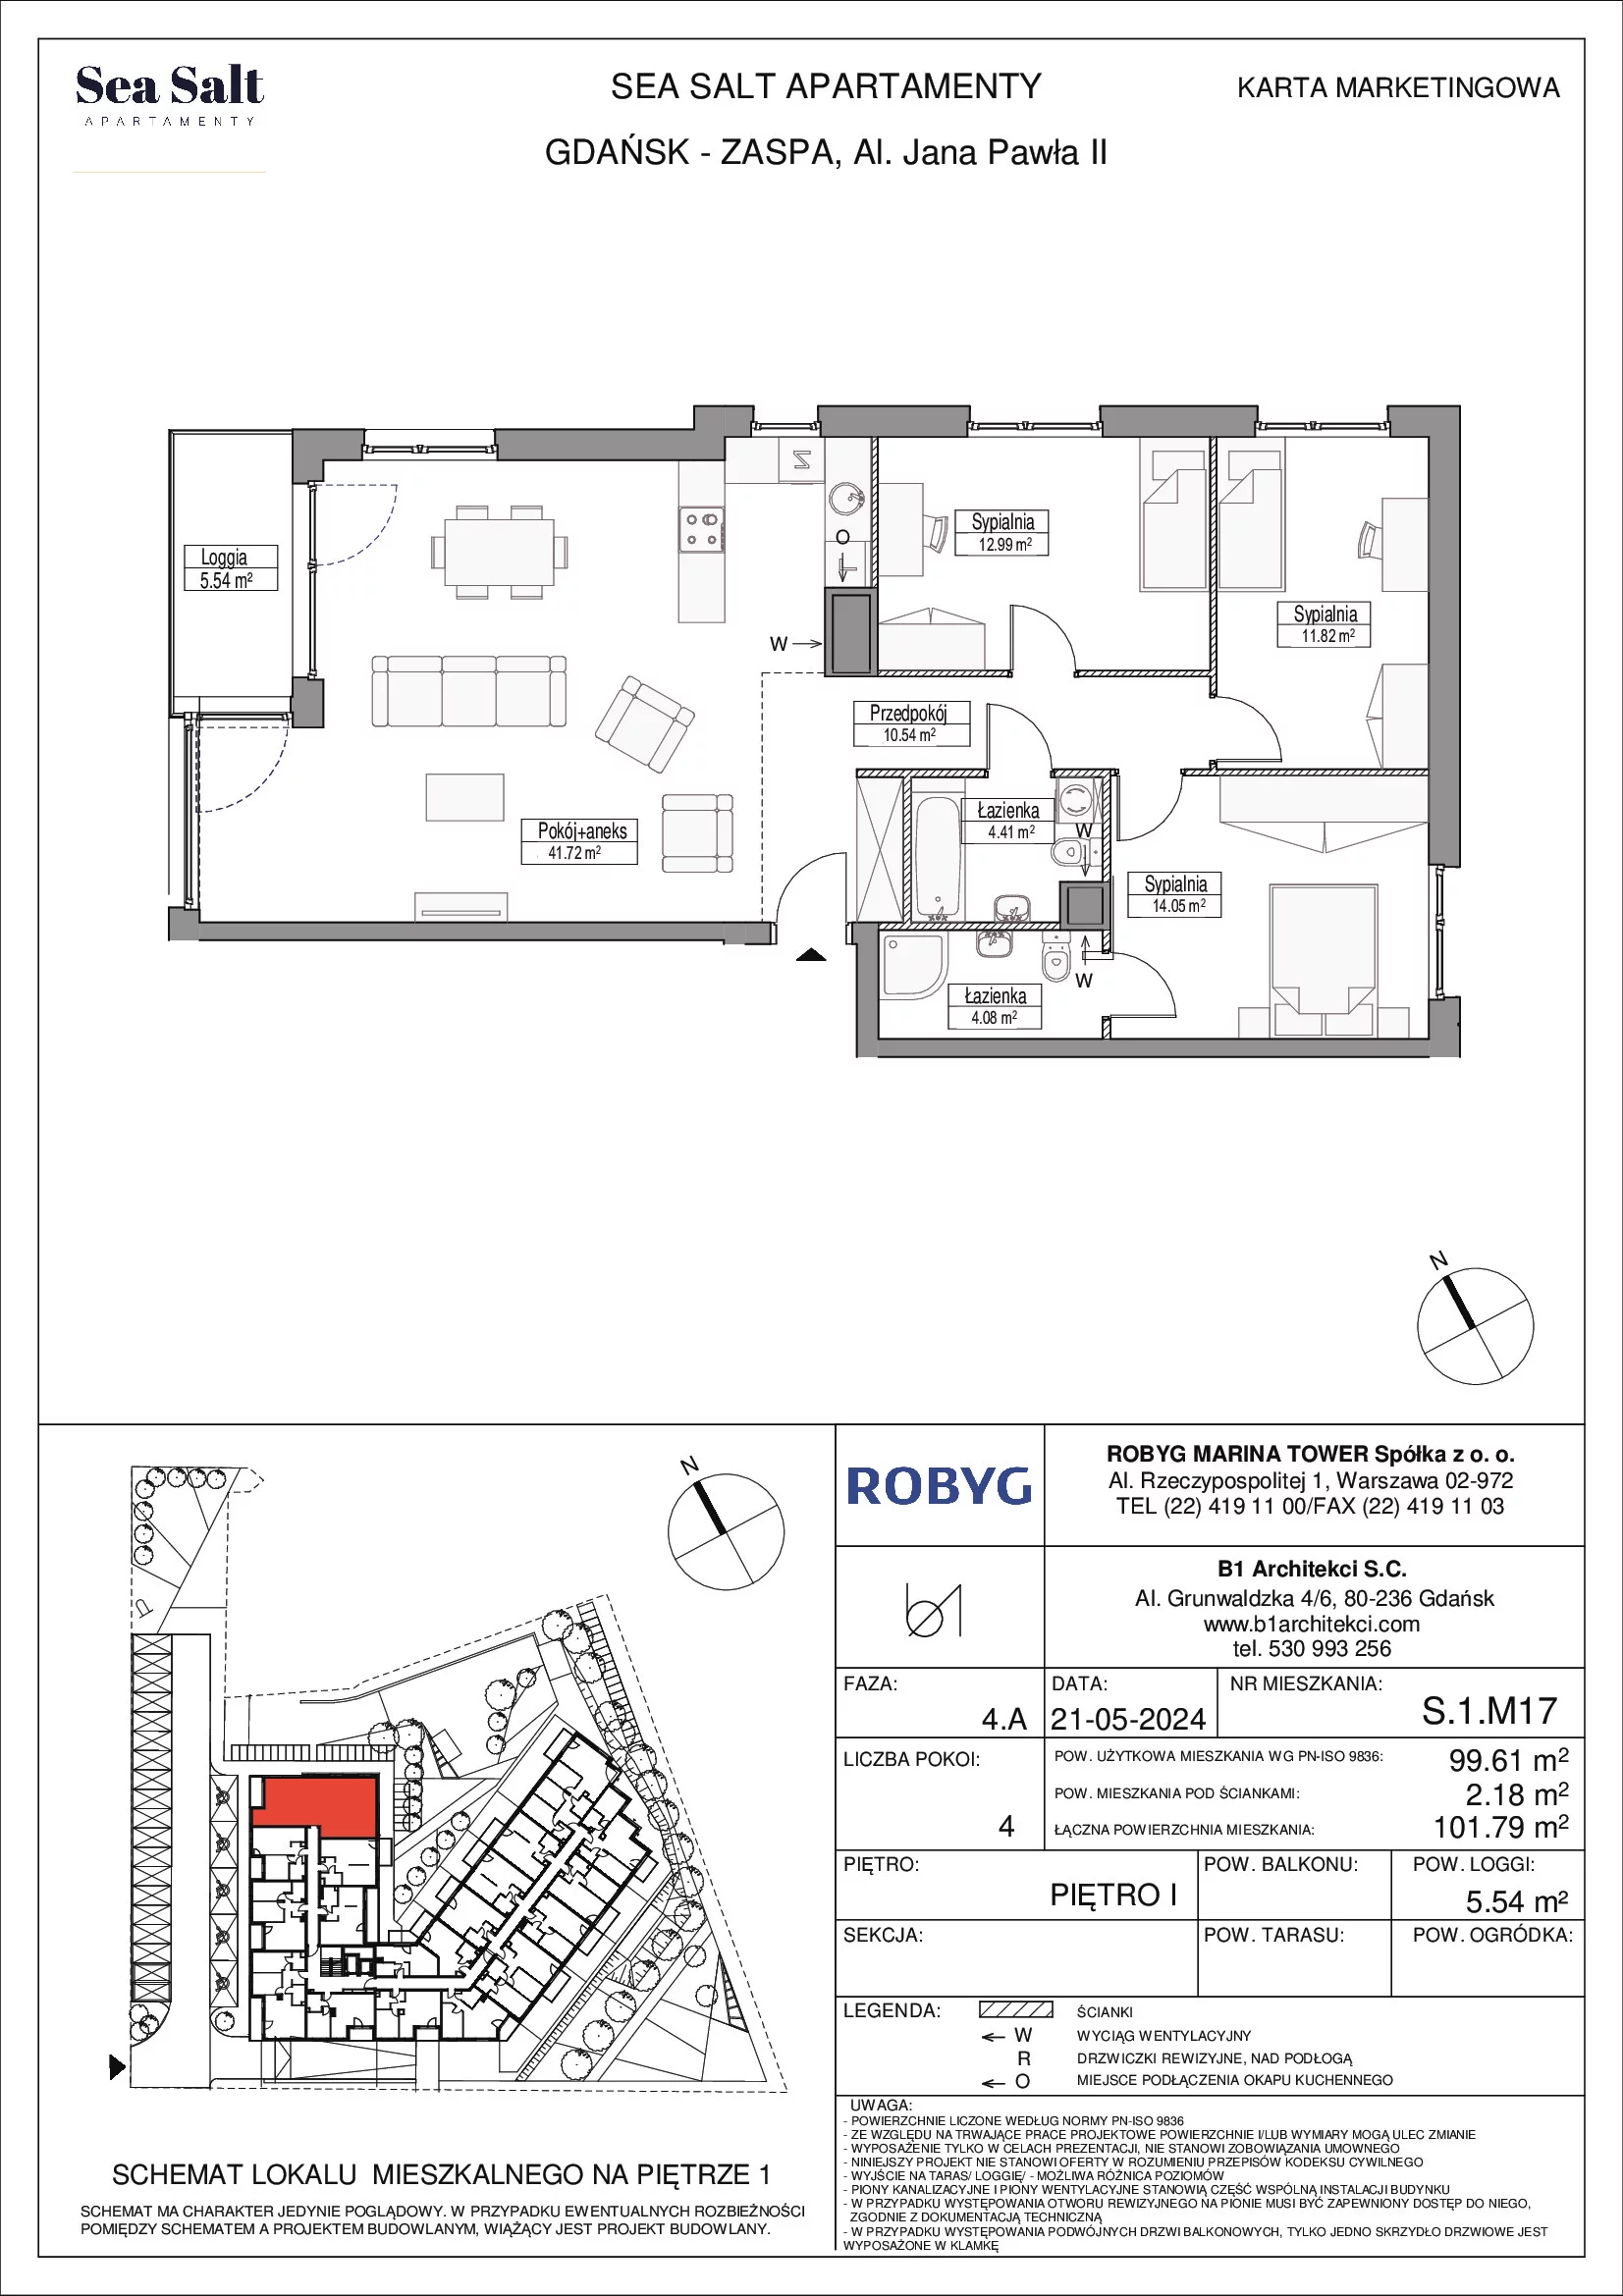 Mieszkanie 99,61 m², piętro 1, oferta nr S.1M17, Sea Salt, Gdańsk, Zaspa, Al. Jana Pawła II 20